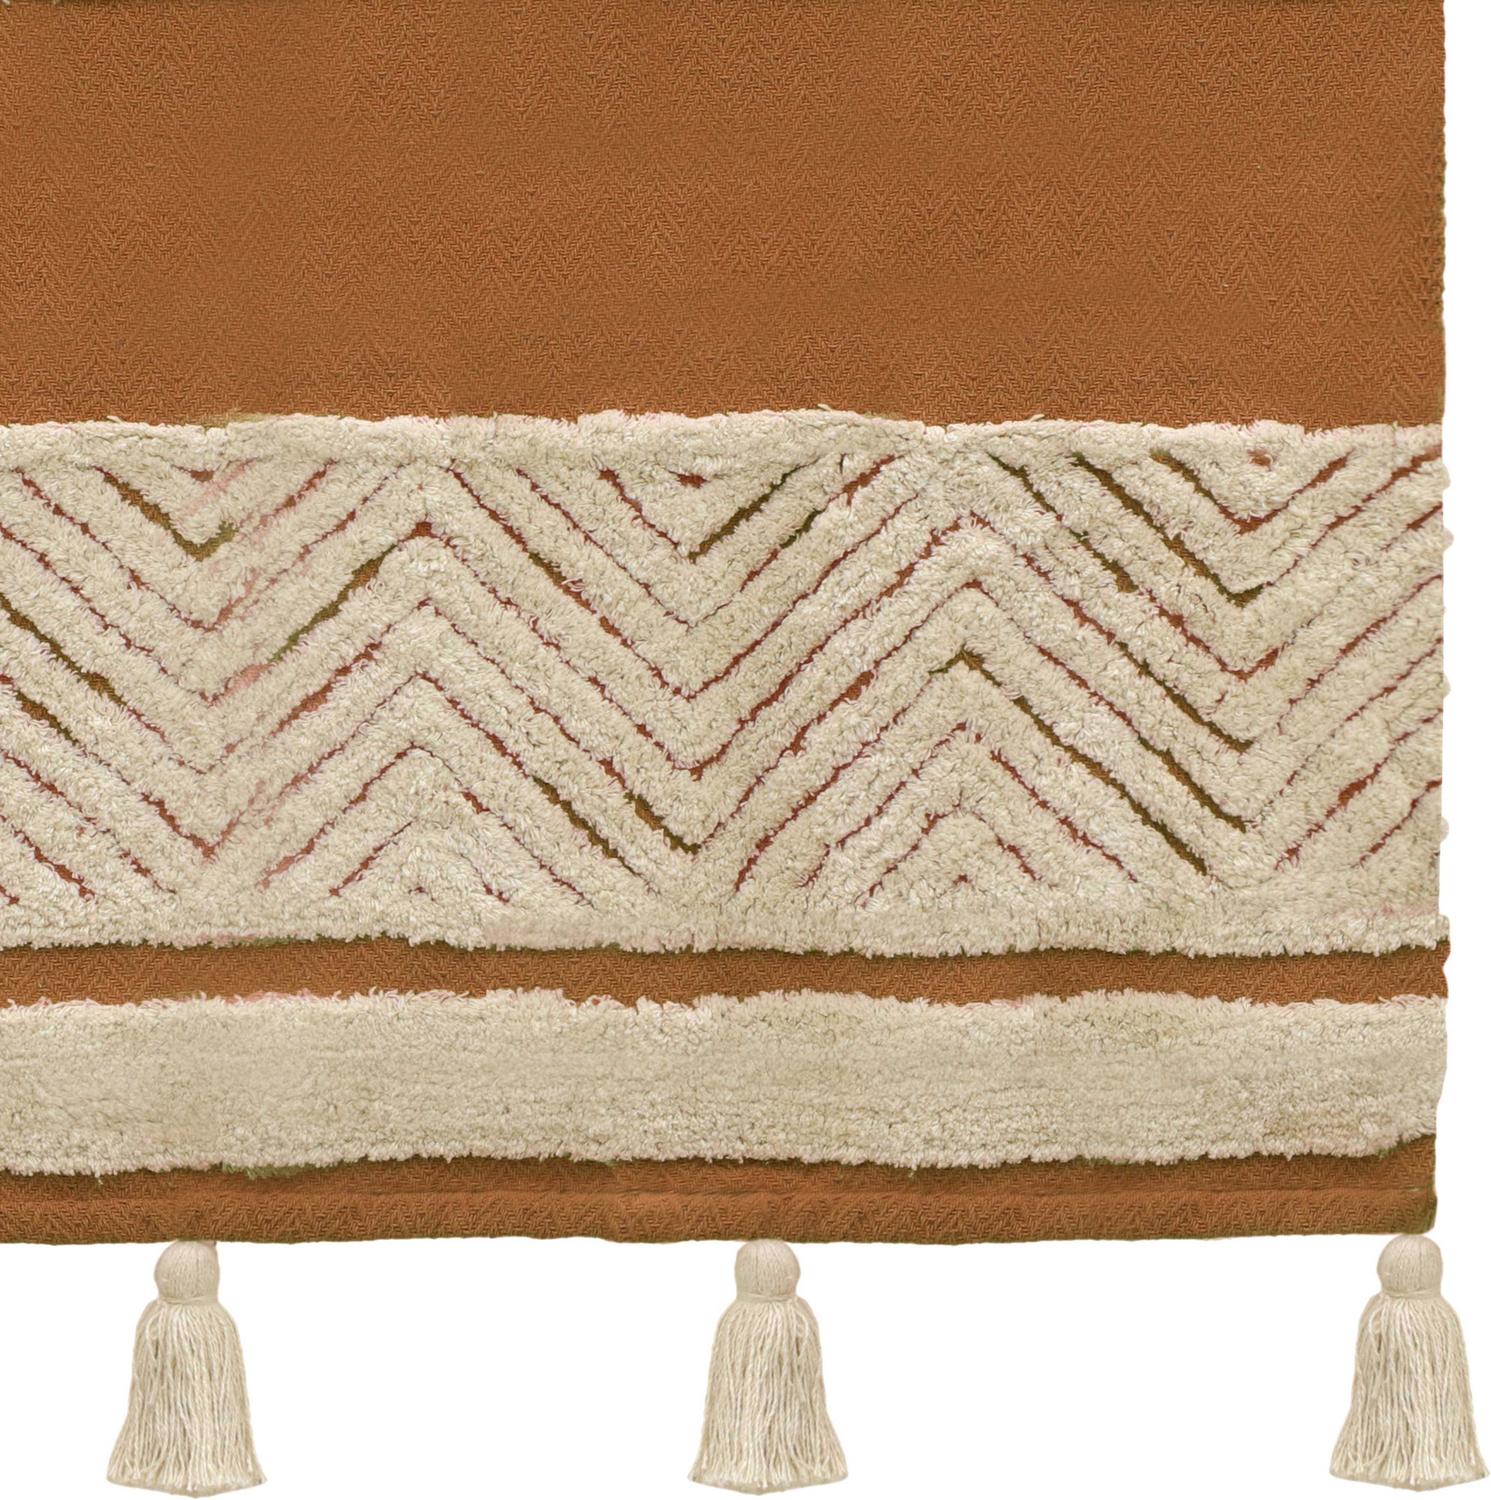 aqua cotton blanket Contemporary Design Furniture Throws Taupe